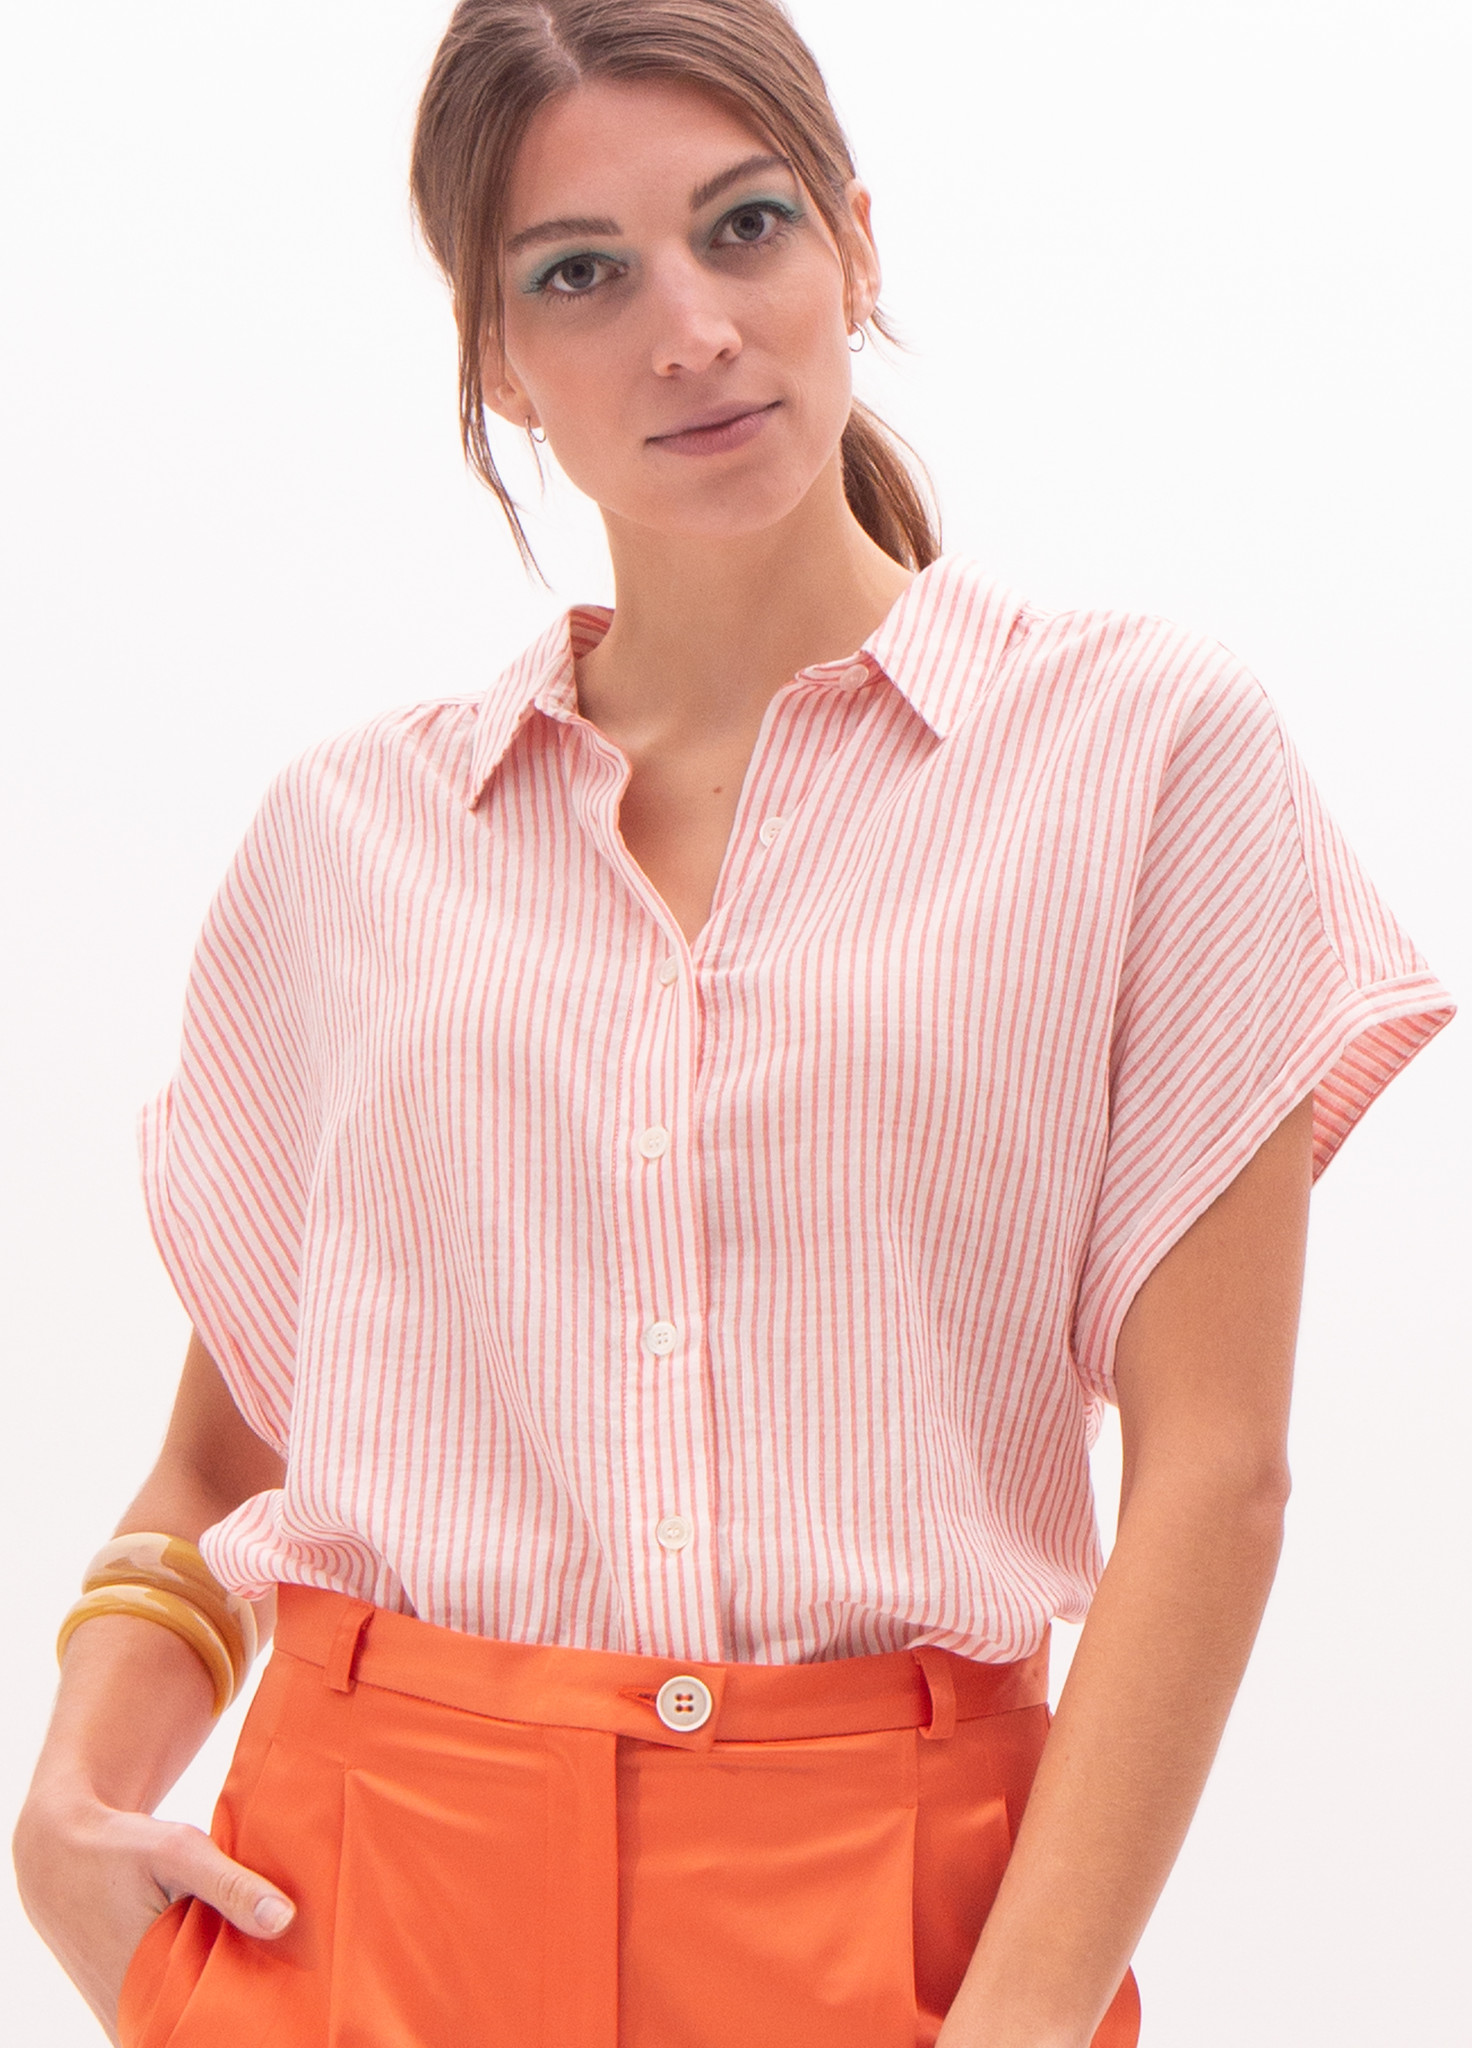 Vleeschouwer Toronto roze gestreept hemdje - Nathalie Vleeschouwer